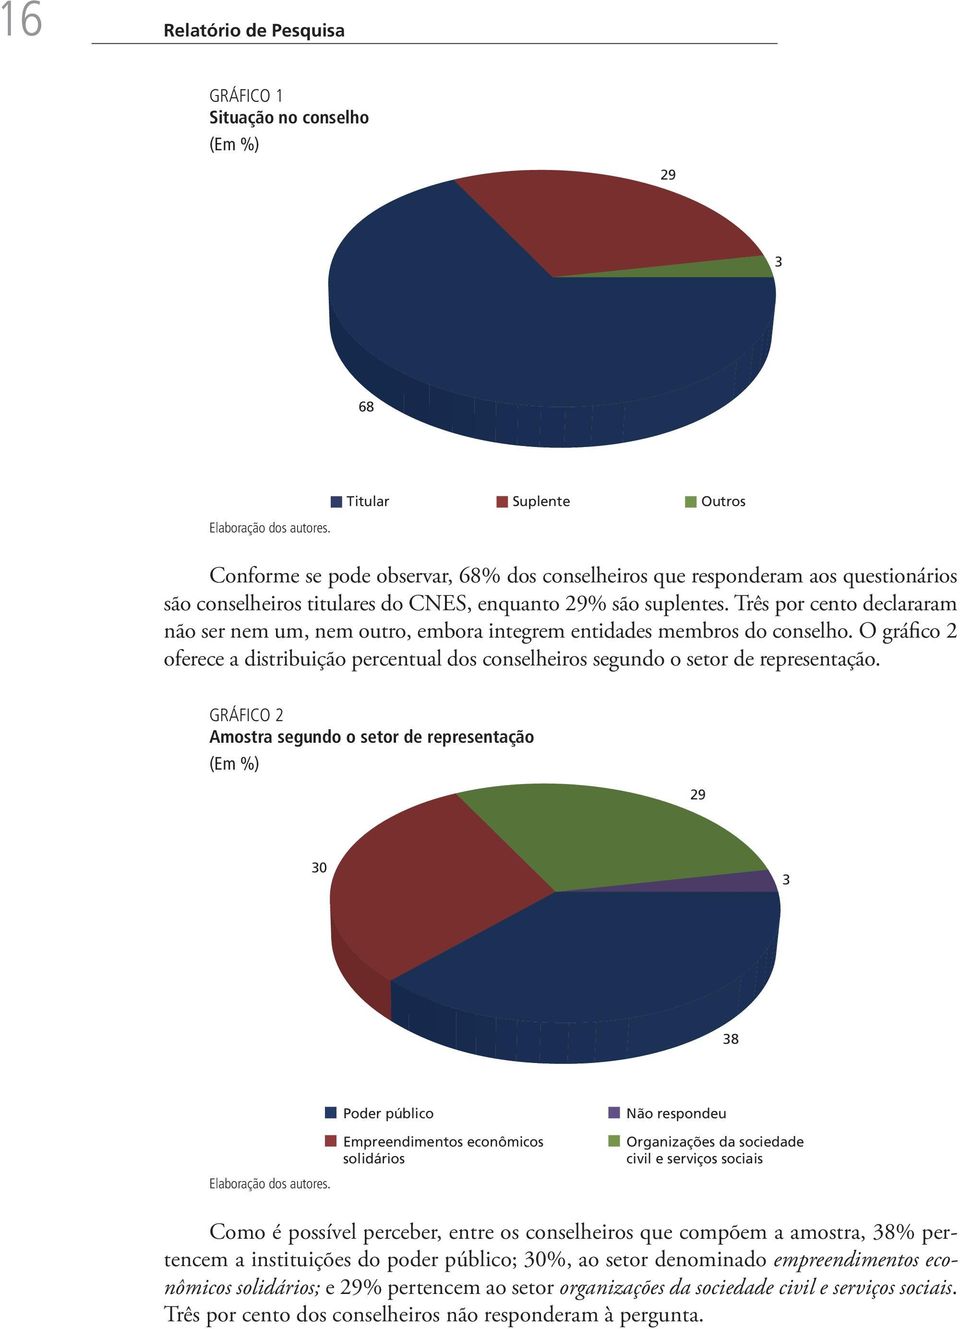 O gráfico 2 oferece a distribuição percentual dos conselheiros segundo o setor de representação.